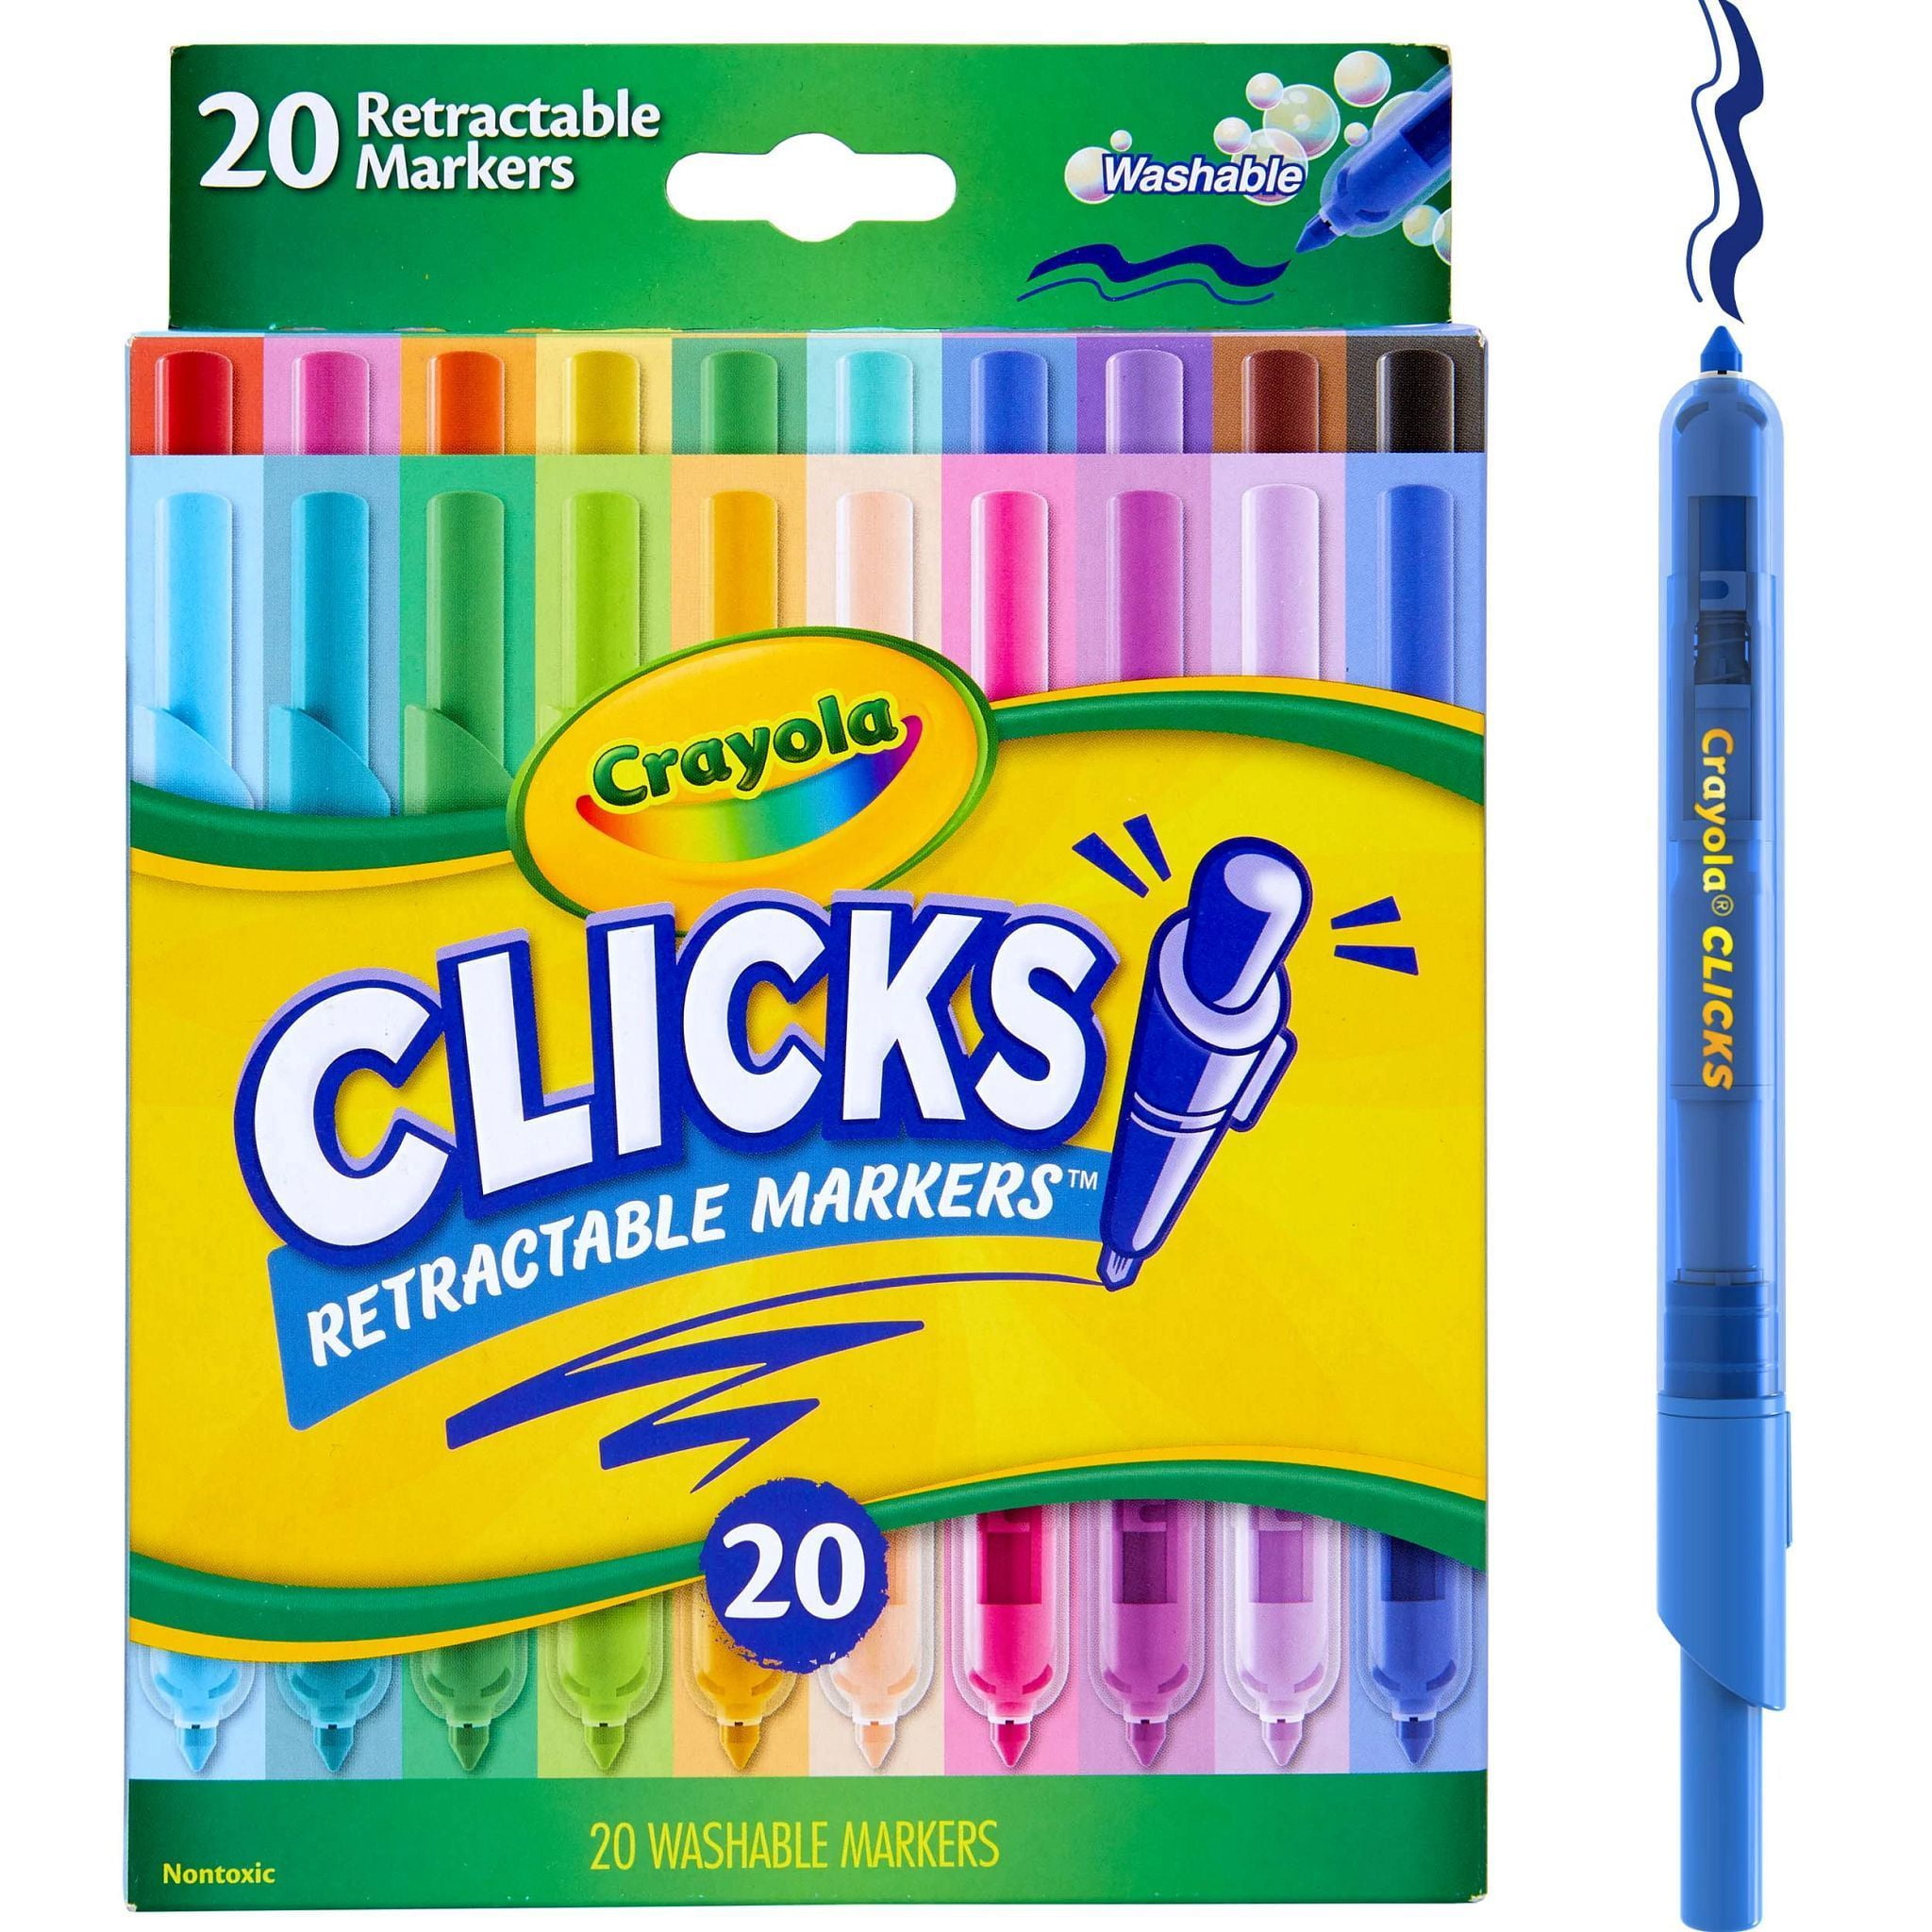 8 Washable Gel Markers Crayola Digital Light Designer Gel Markers Refill Pack 